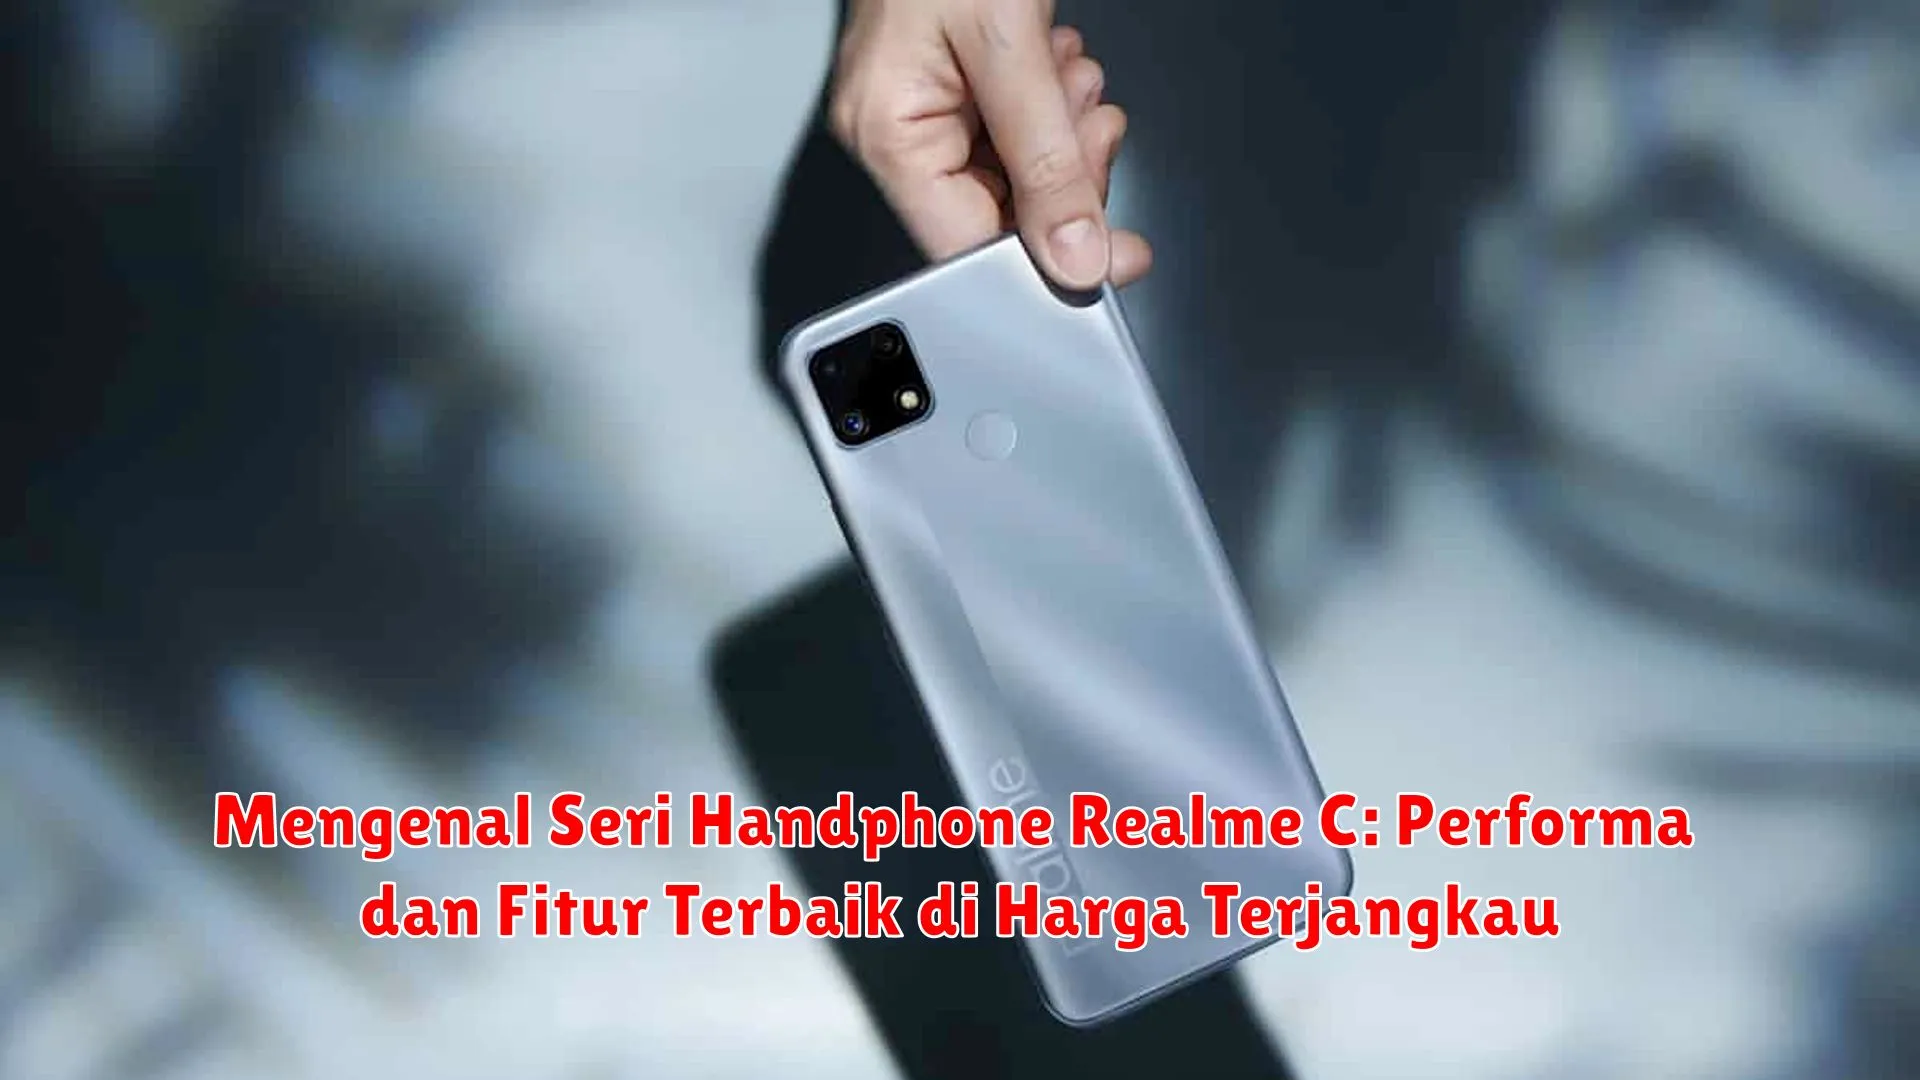 Mengenal Seri Handphone Realme C: Performa dan Fitur Terbaik di Harga Terjangkau